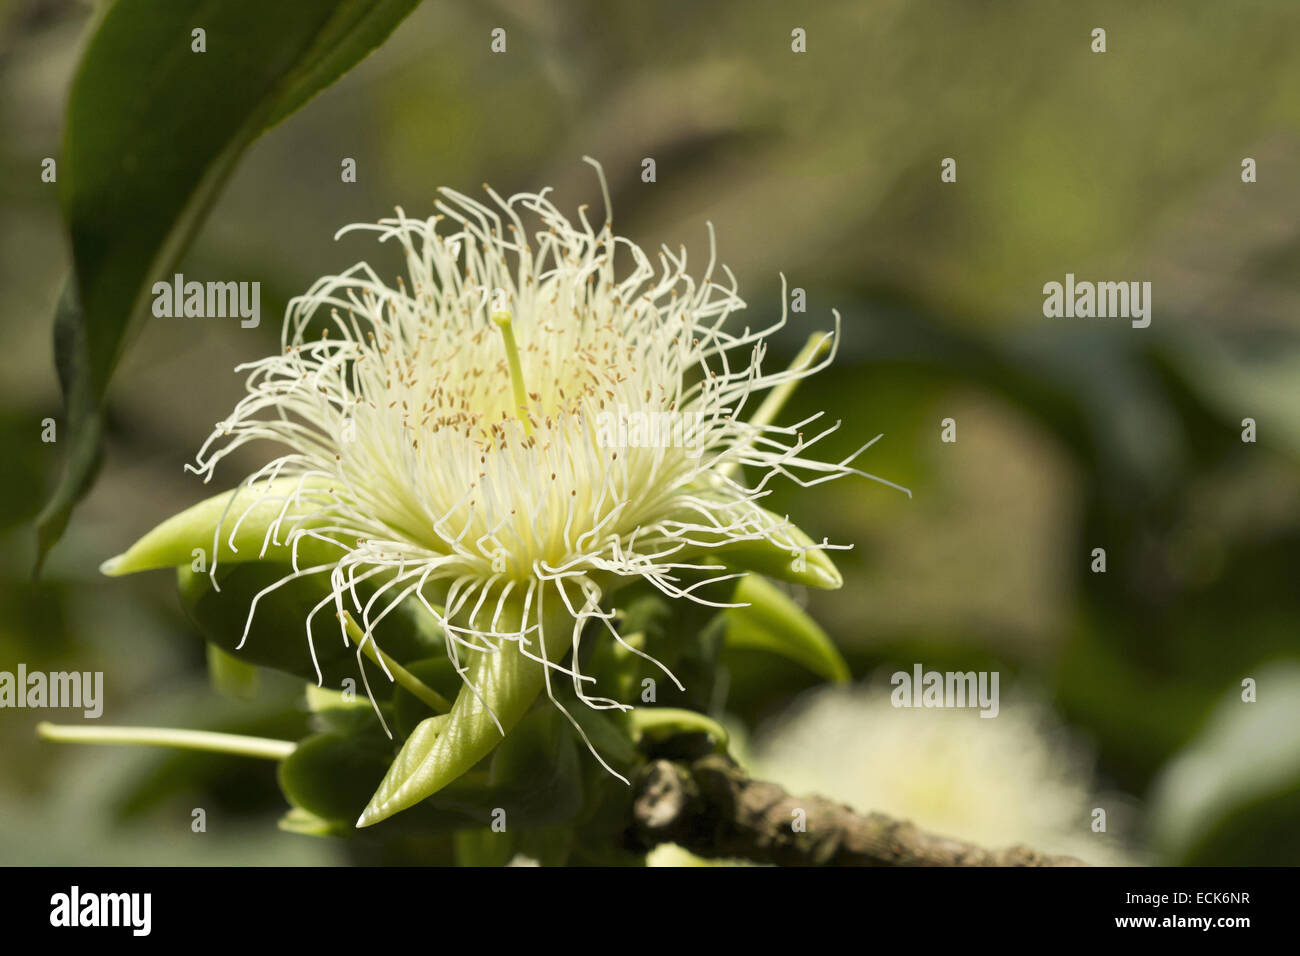 Blume des Baumes Arboreya Careya das lokal als "Kumbh" bekannt ist Stockfoto